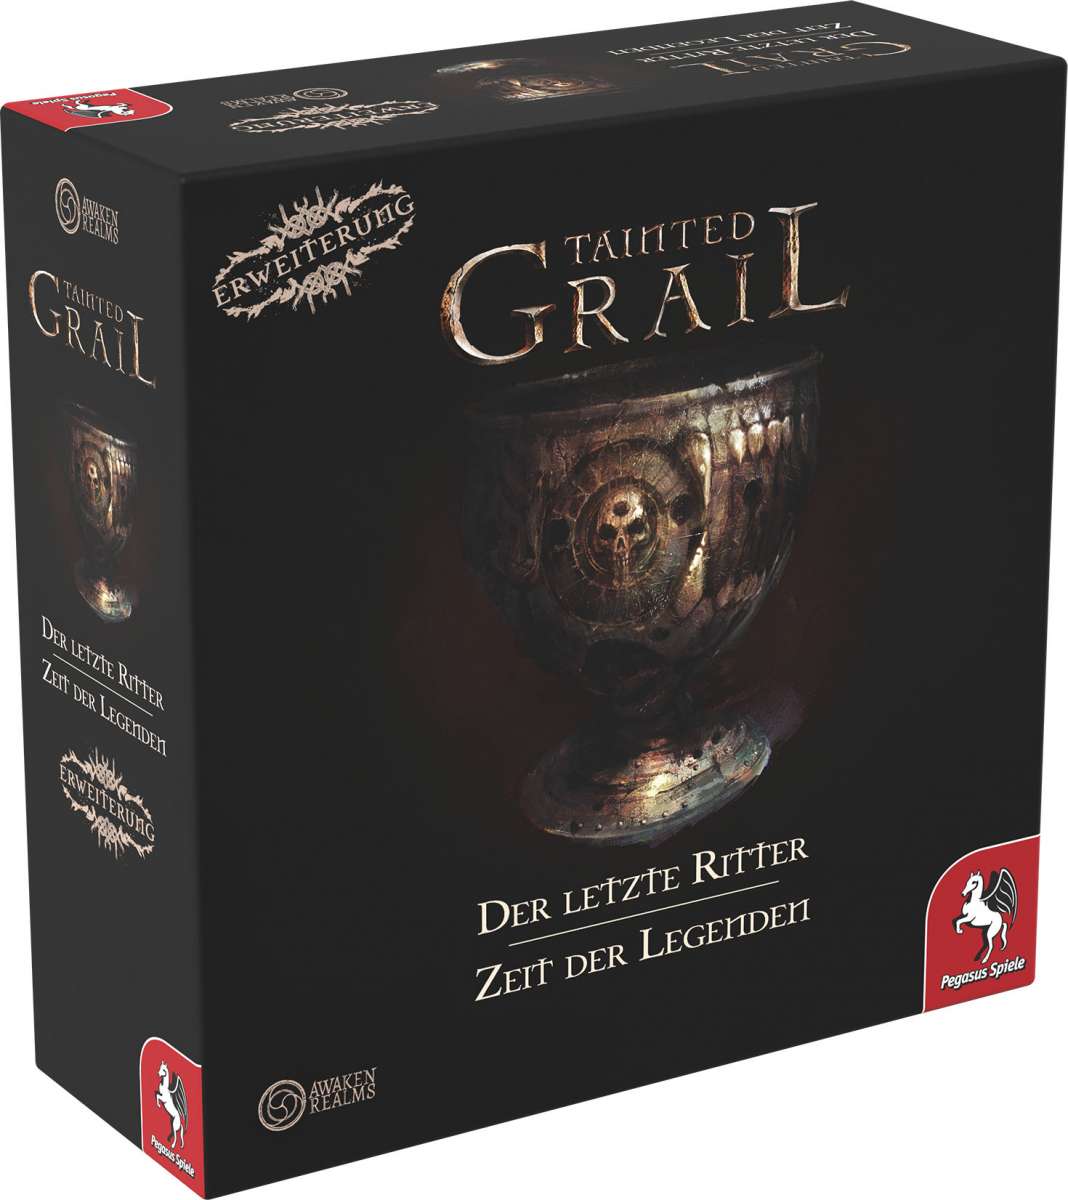 Tainted Grail Der letzte Ritter + Zeit der Legenden